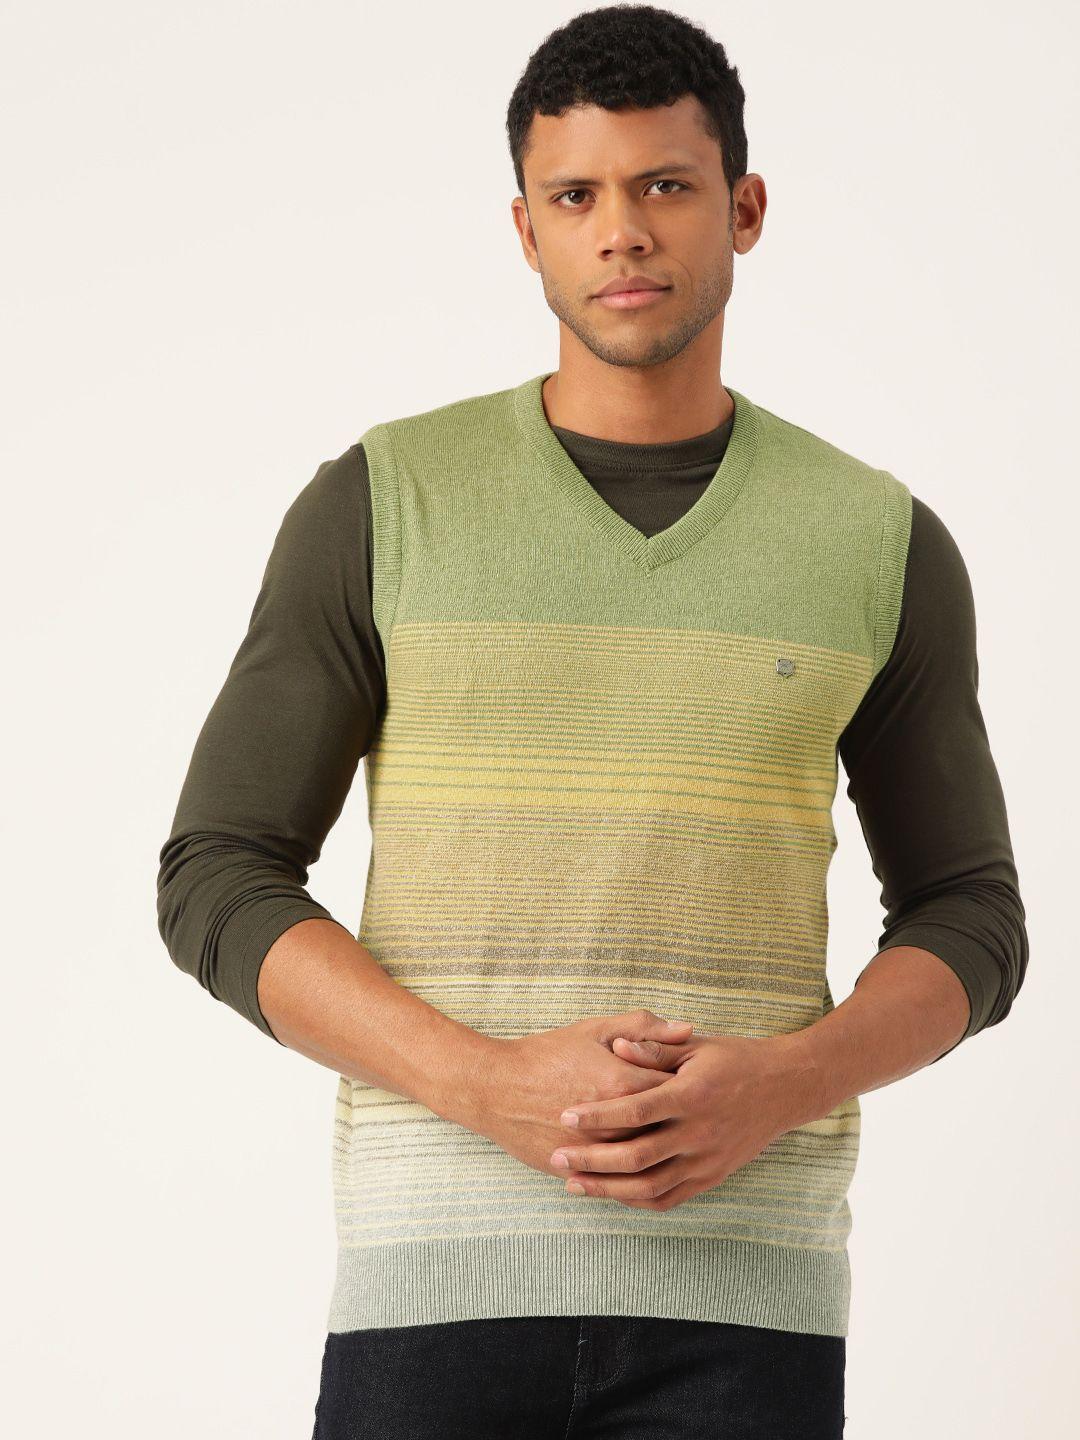 monte carlo striped cotton sweater vest